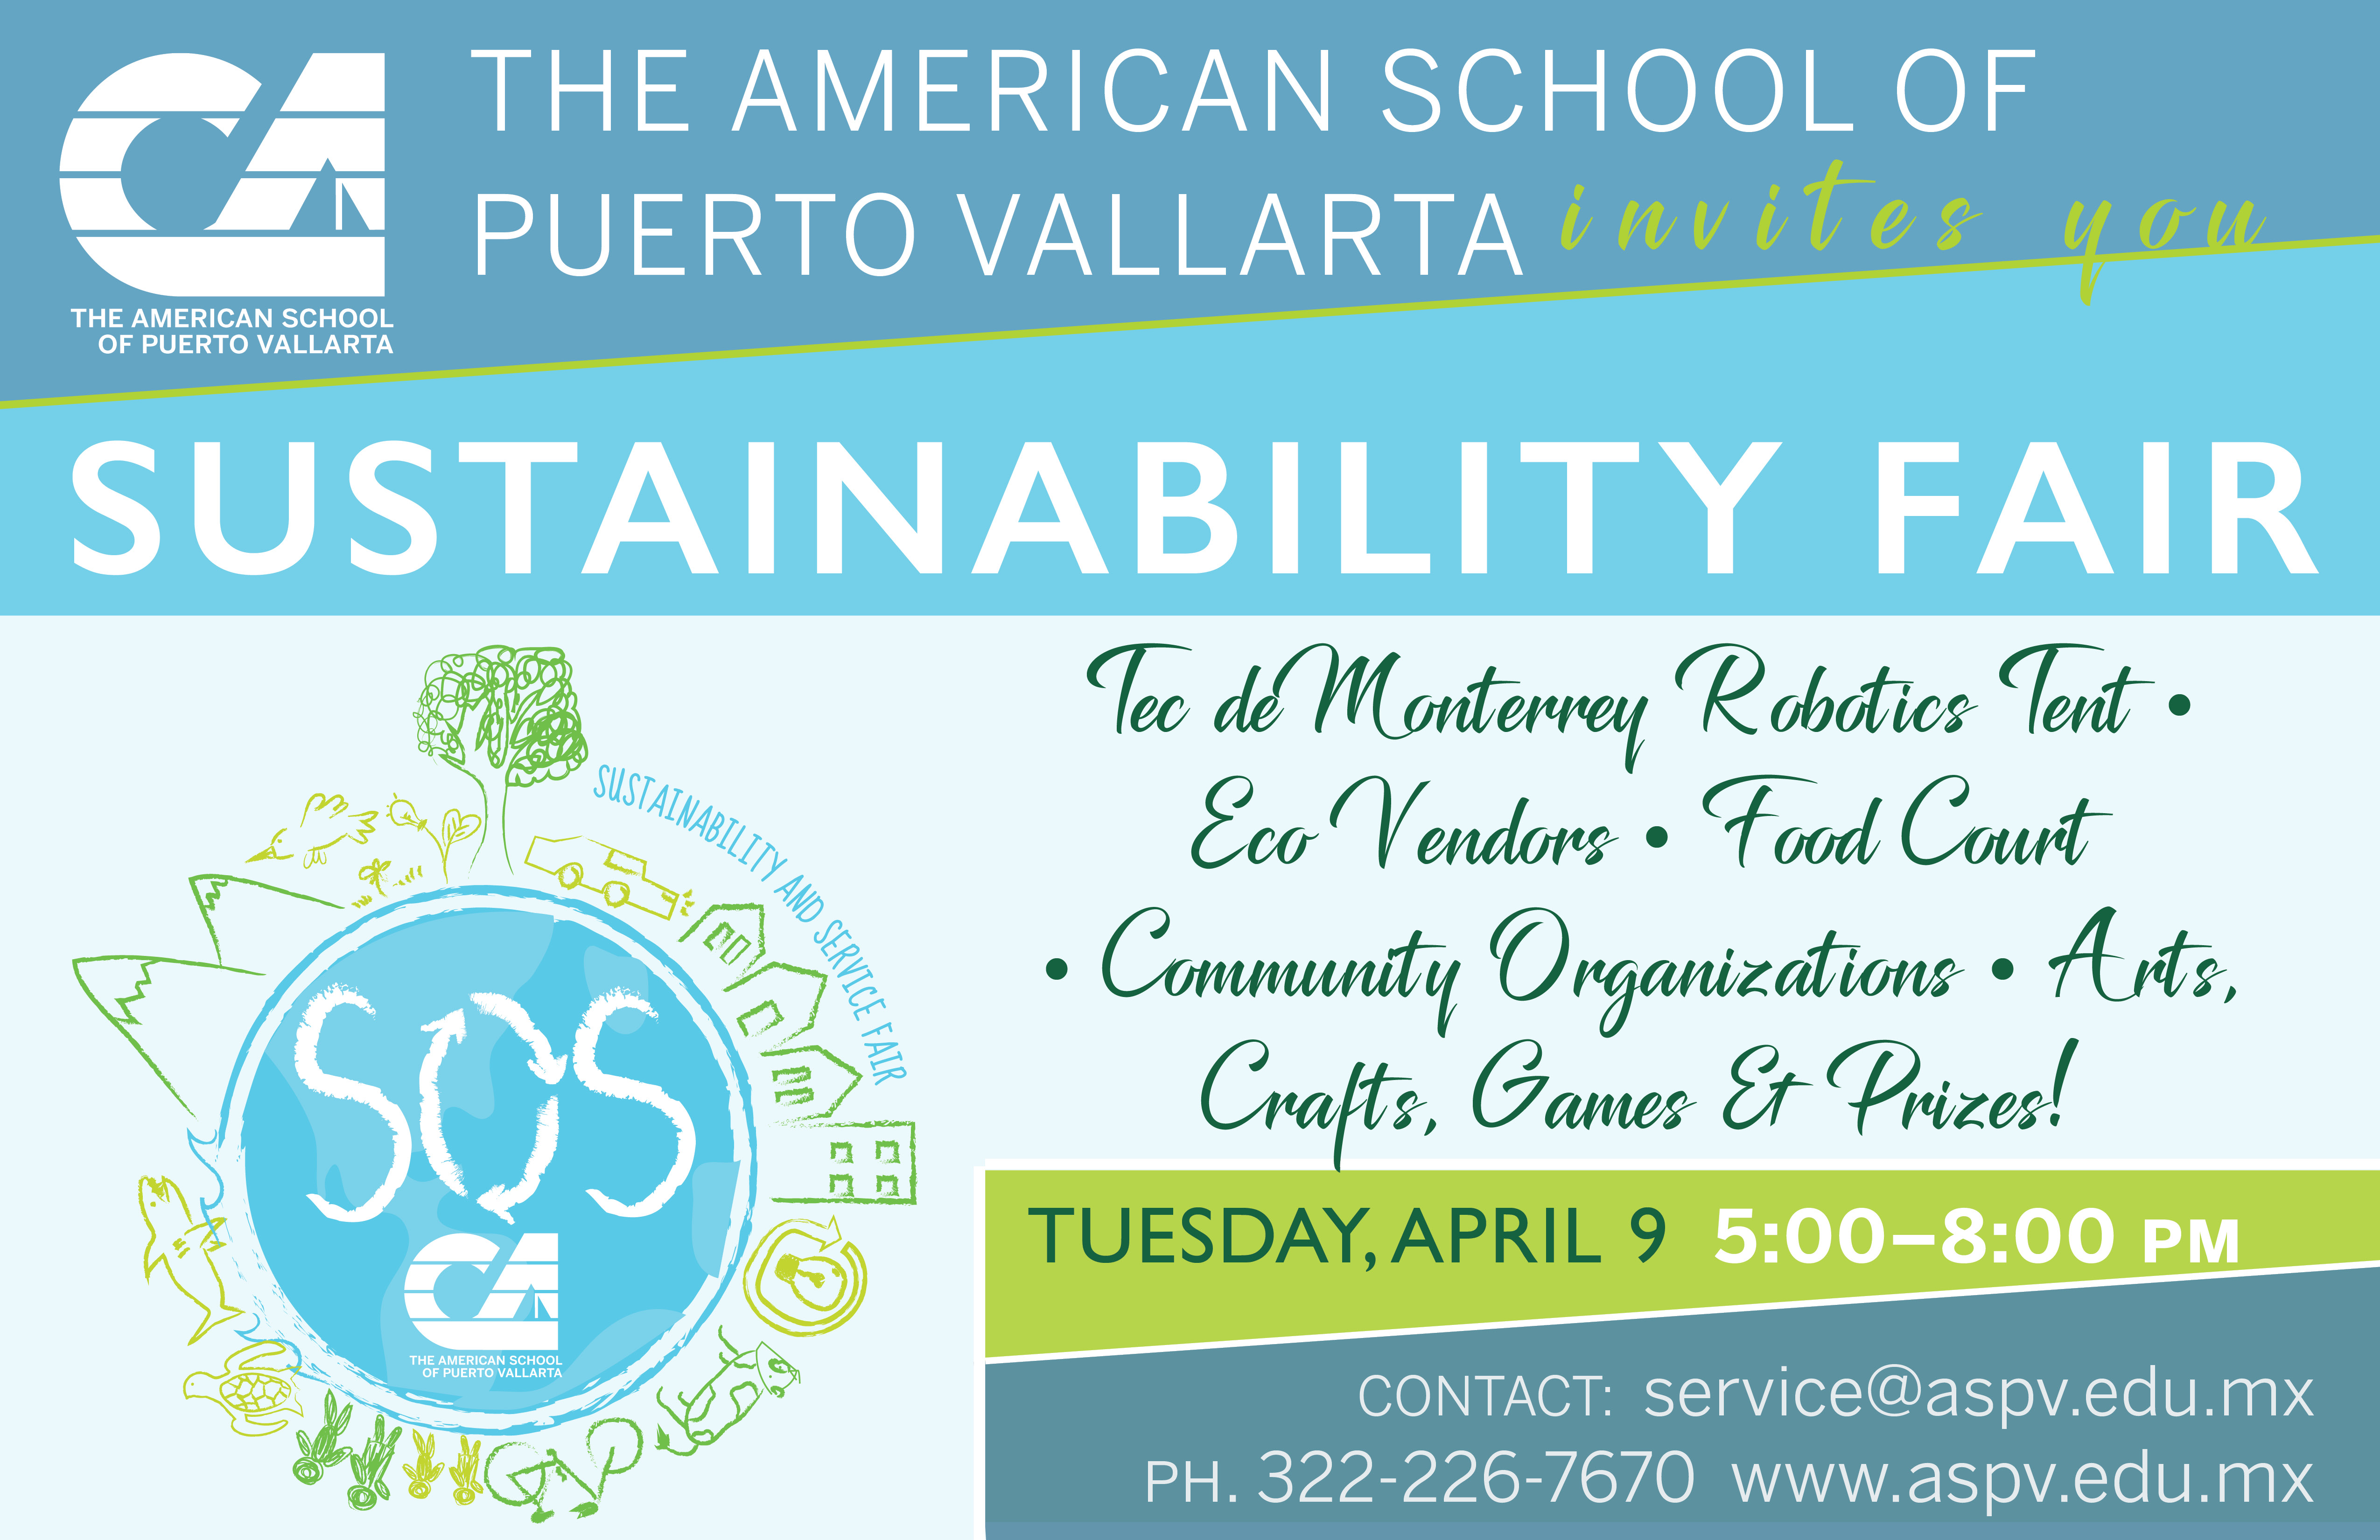 The american school of puerto vallarta will host sustainability fair, lifestyles